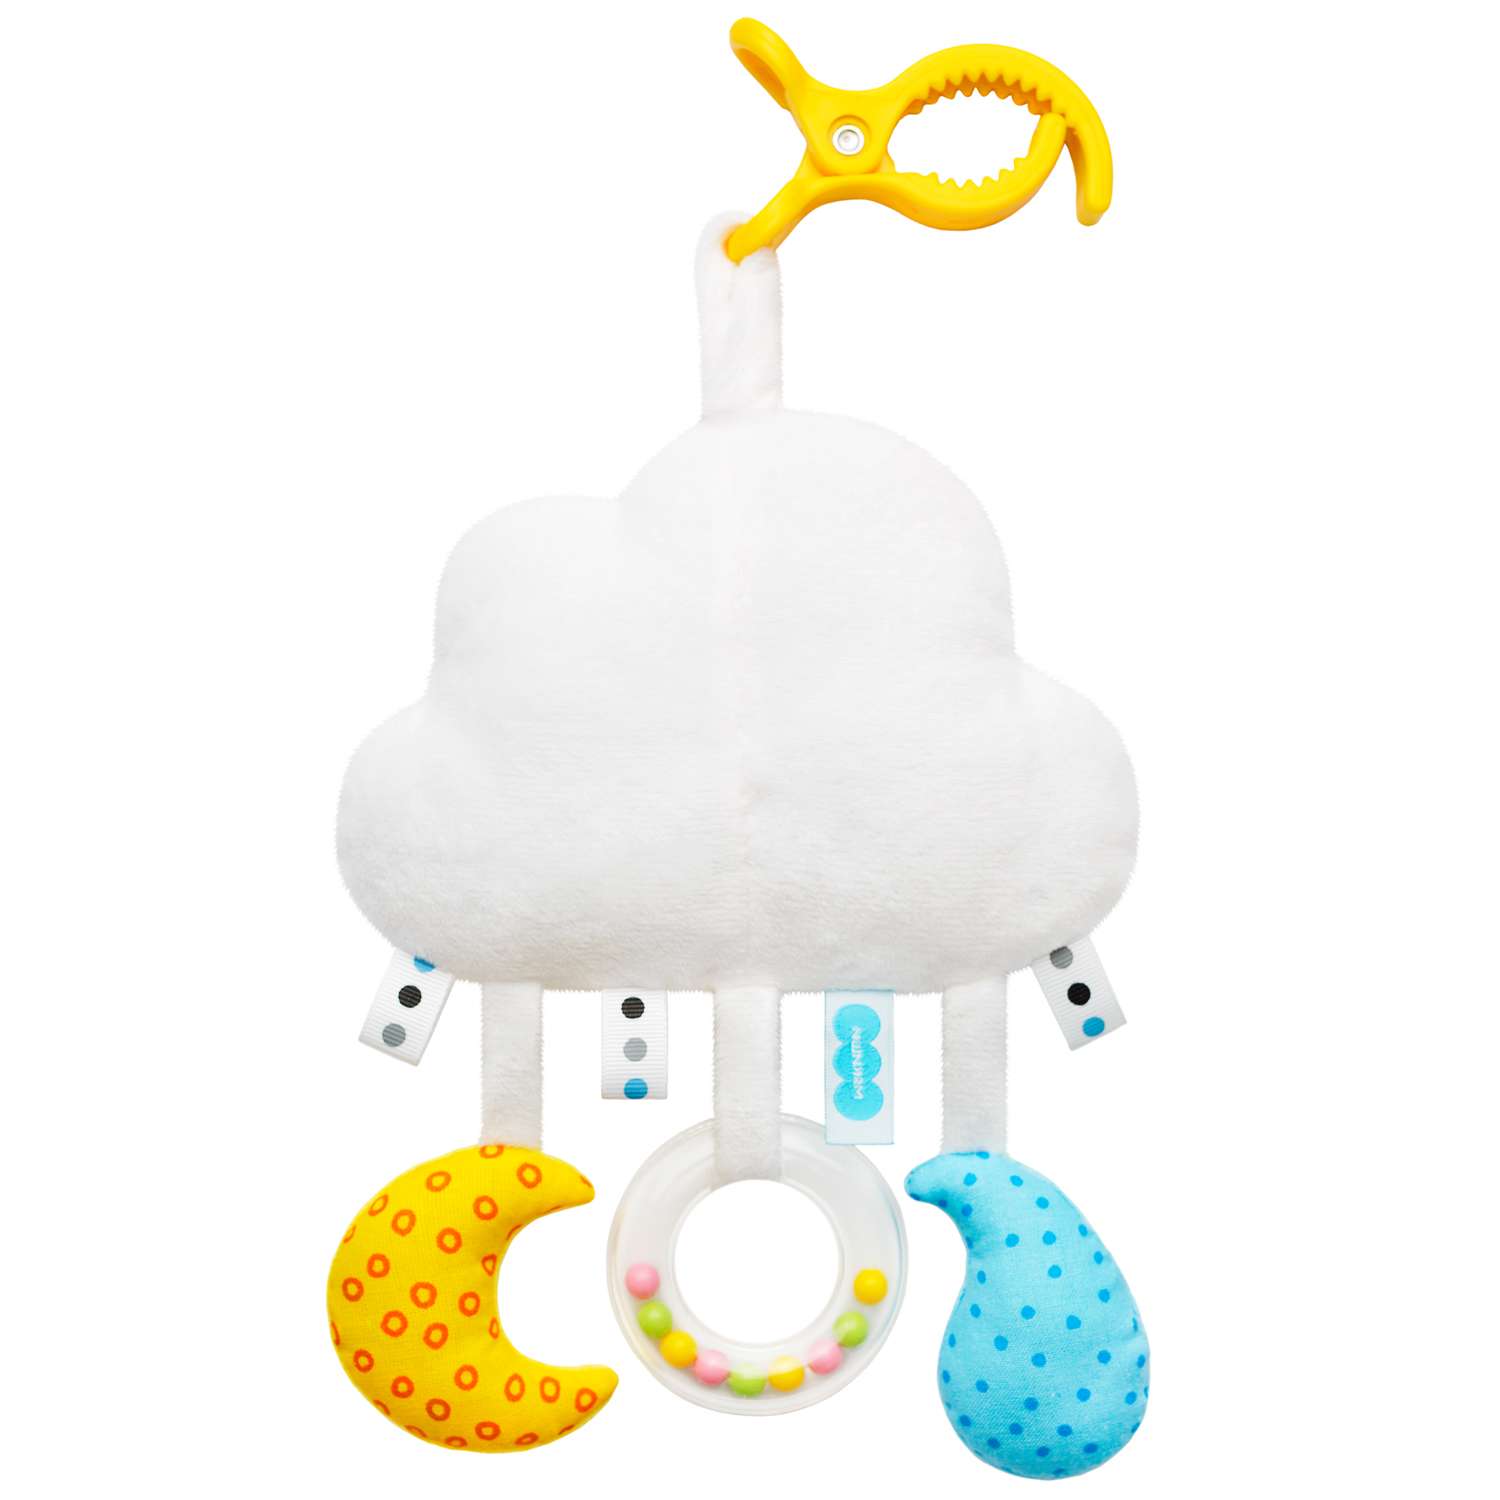 Подвеска Мякиши Развивающая детская игрушка погремушка Облачко на кроватку подарок для новорожденных - фото 2